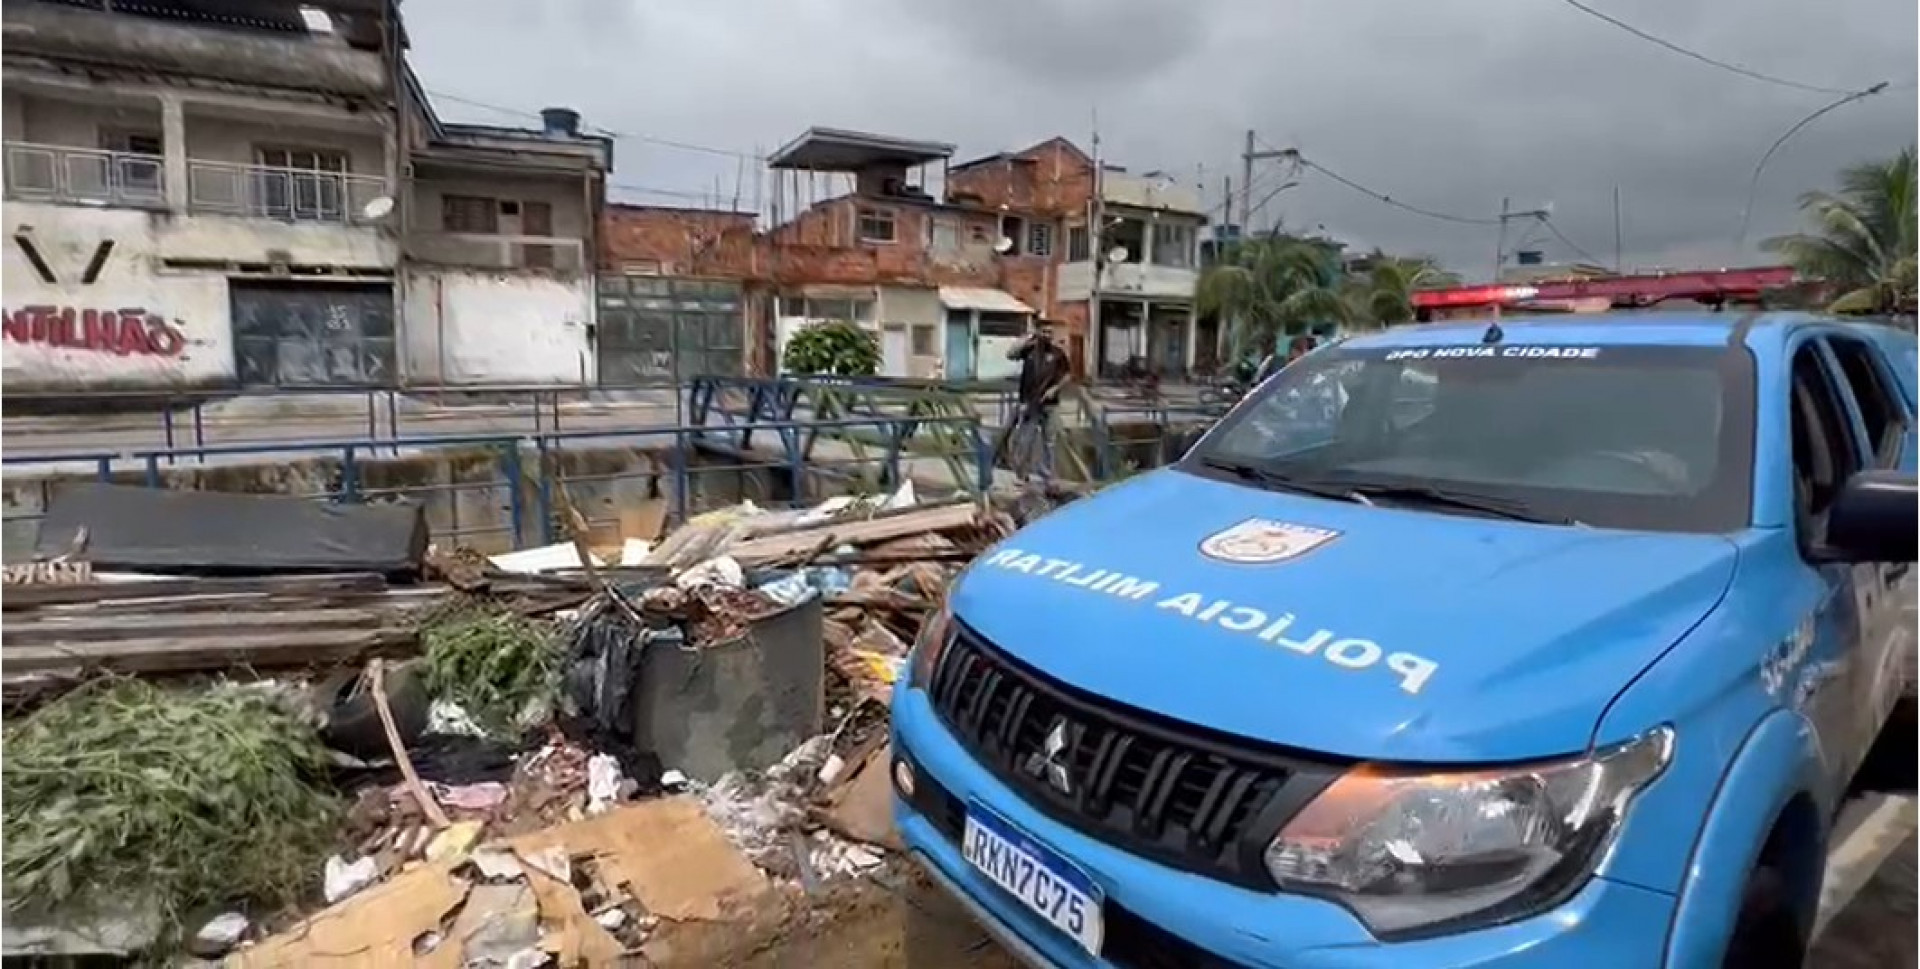 Policiais militares do 20º BPM deram apoio aos serviços de retirada dos entulhos usados como barricadas - Divulgação / PMN